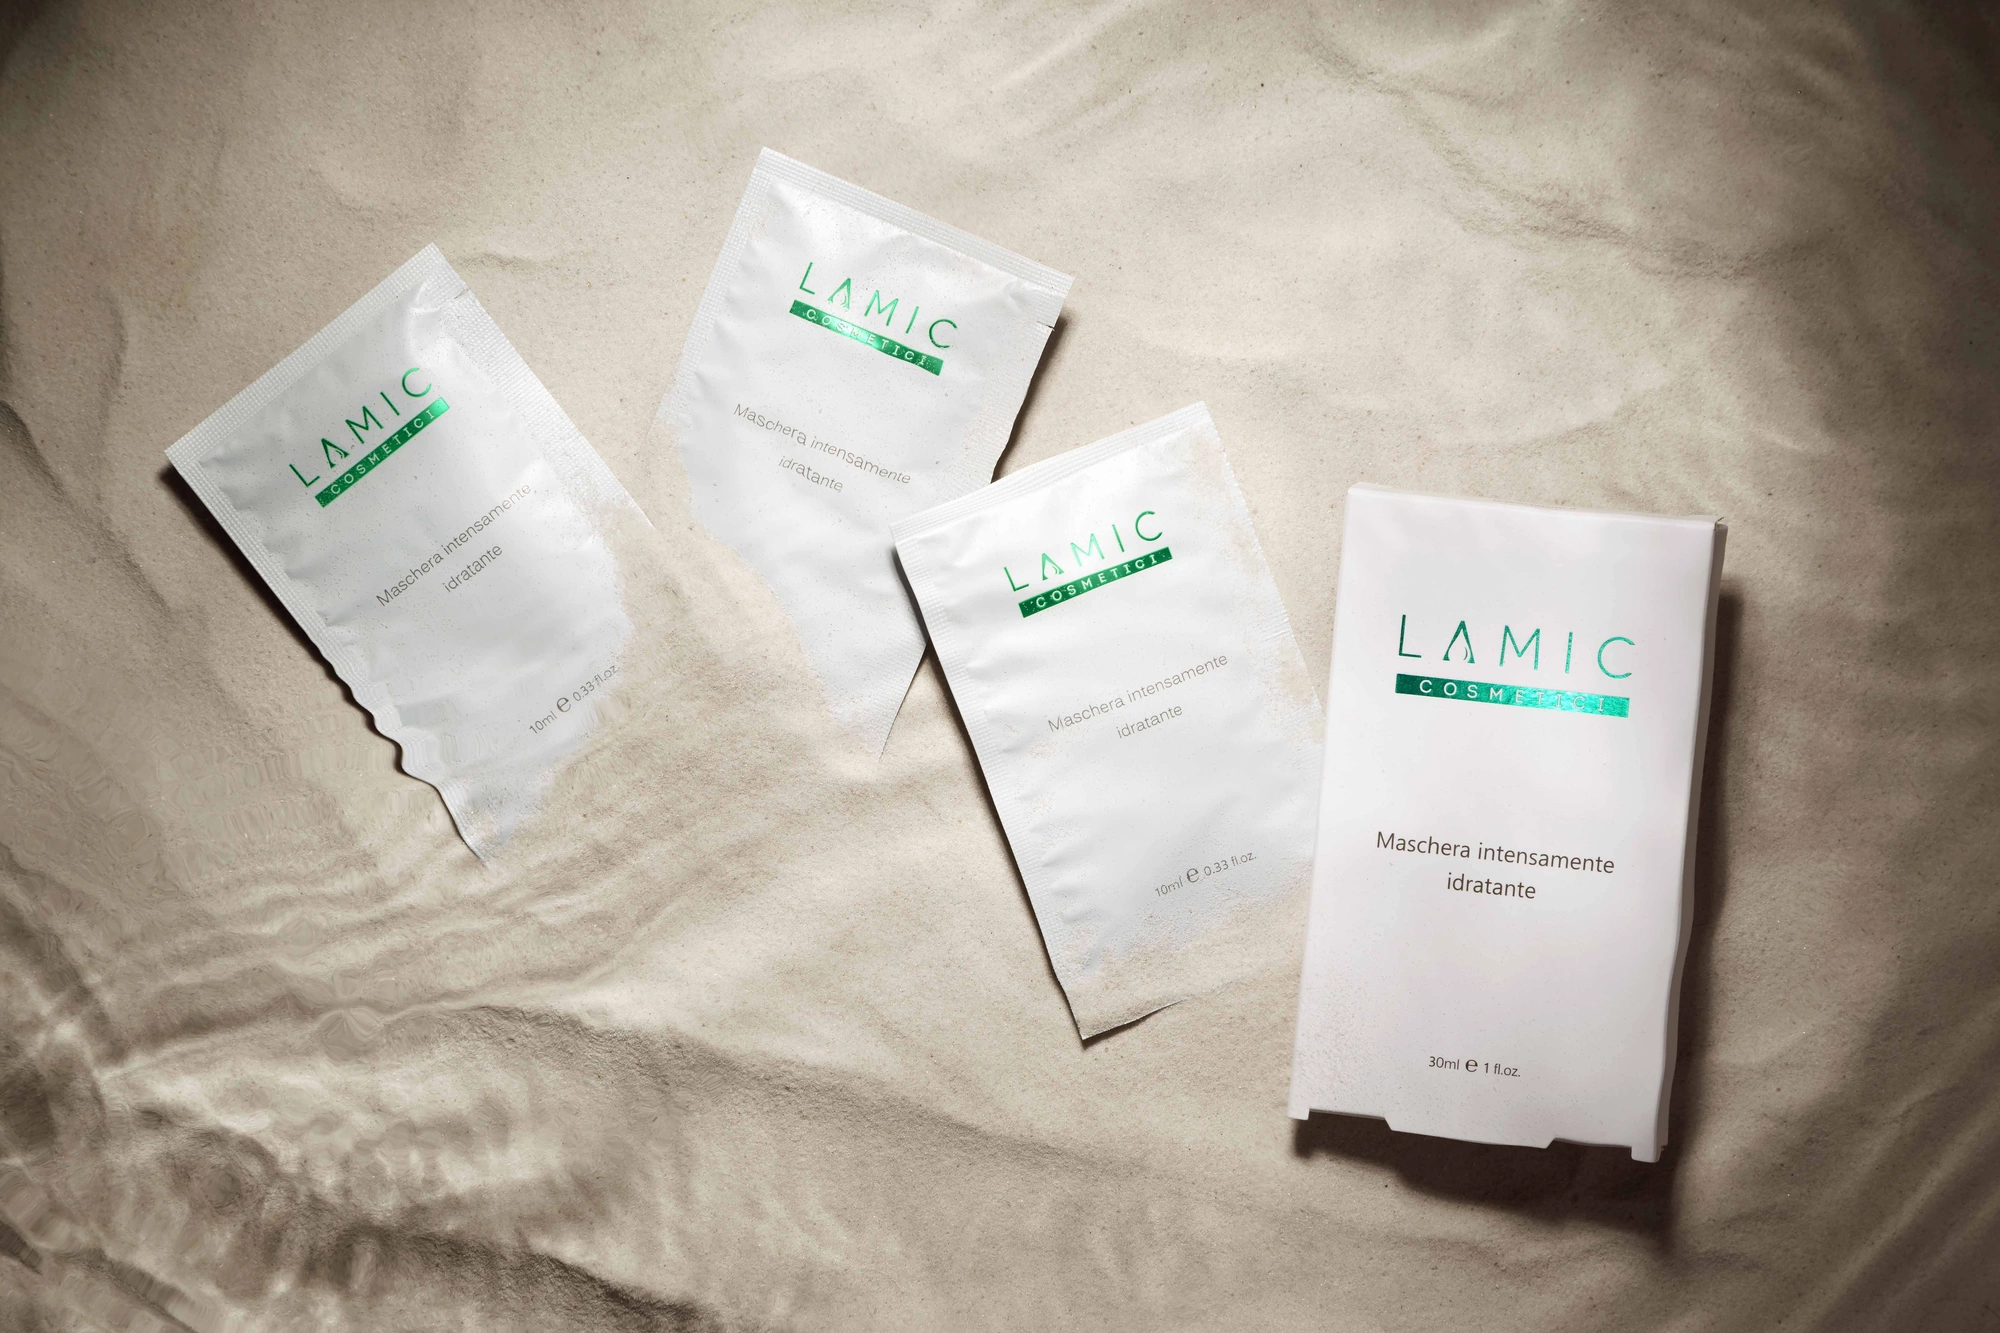 Інтенсивно зволожуюча маска для всіх типів шкіри LAMIC COSMETICI MASCHERA INTENSAMENTE IDRADANTE, 10 ml